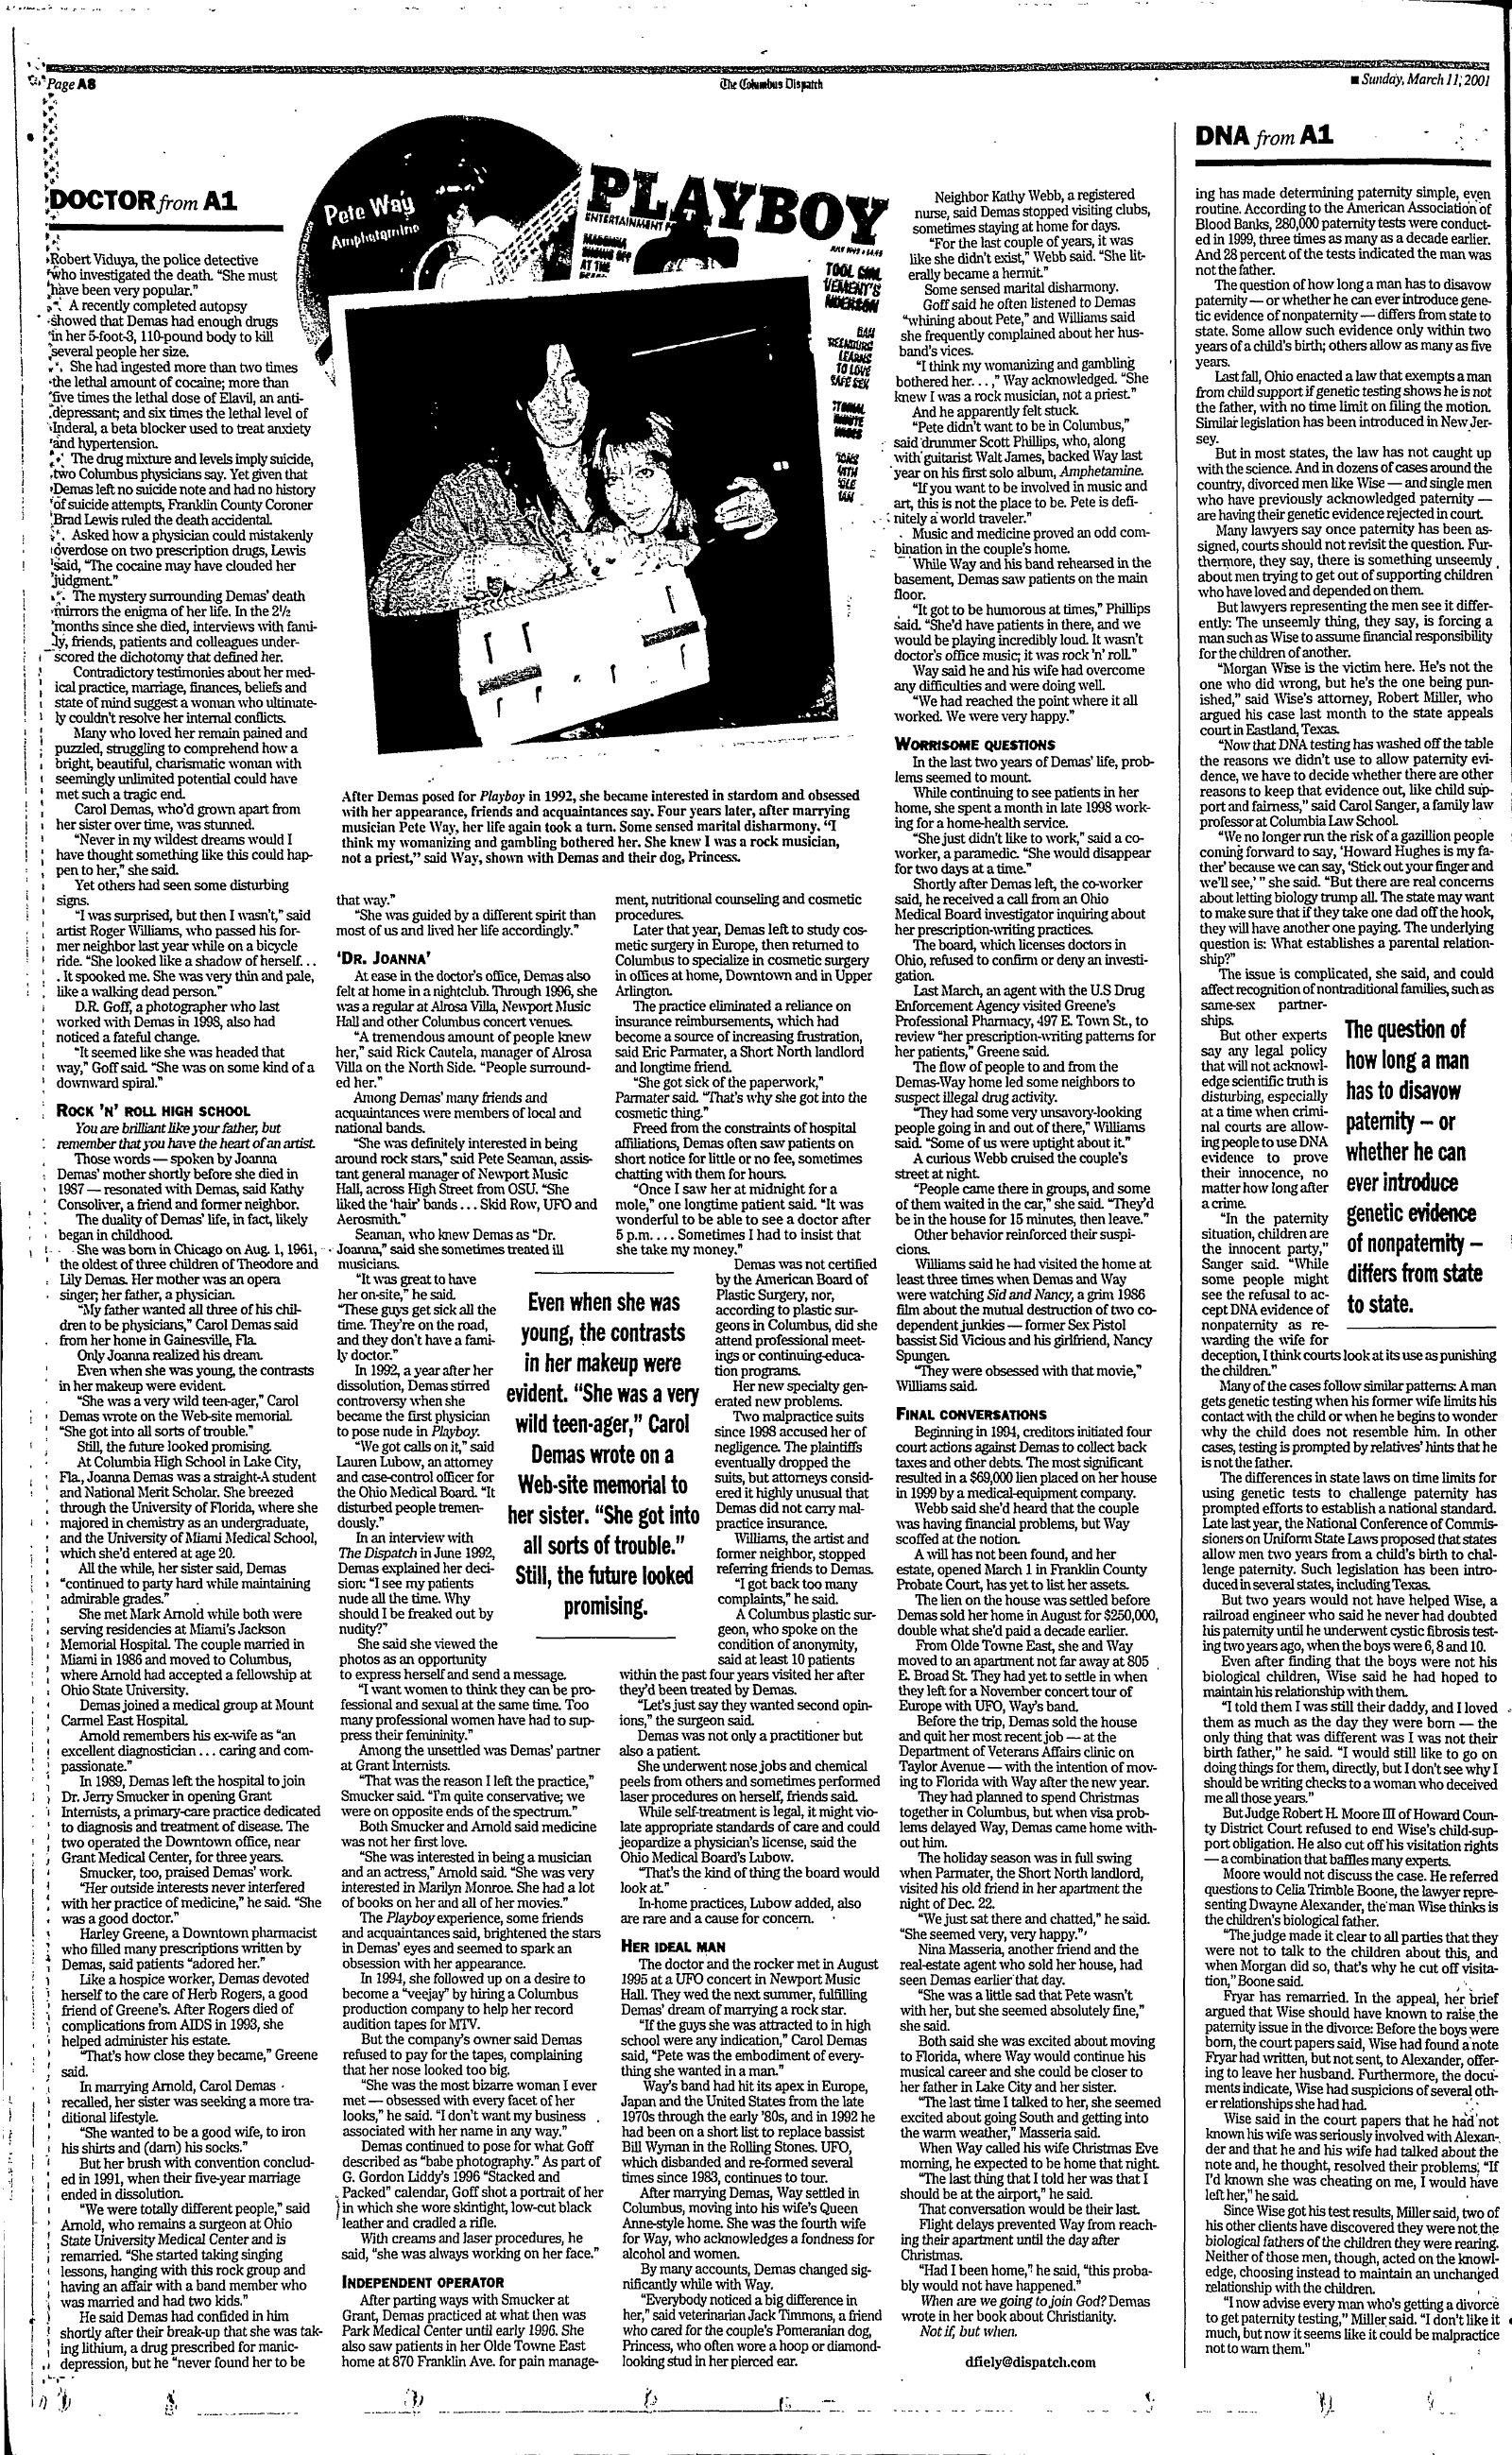 Columbus Dispatch March 11, 2001 pt. 2